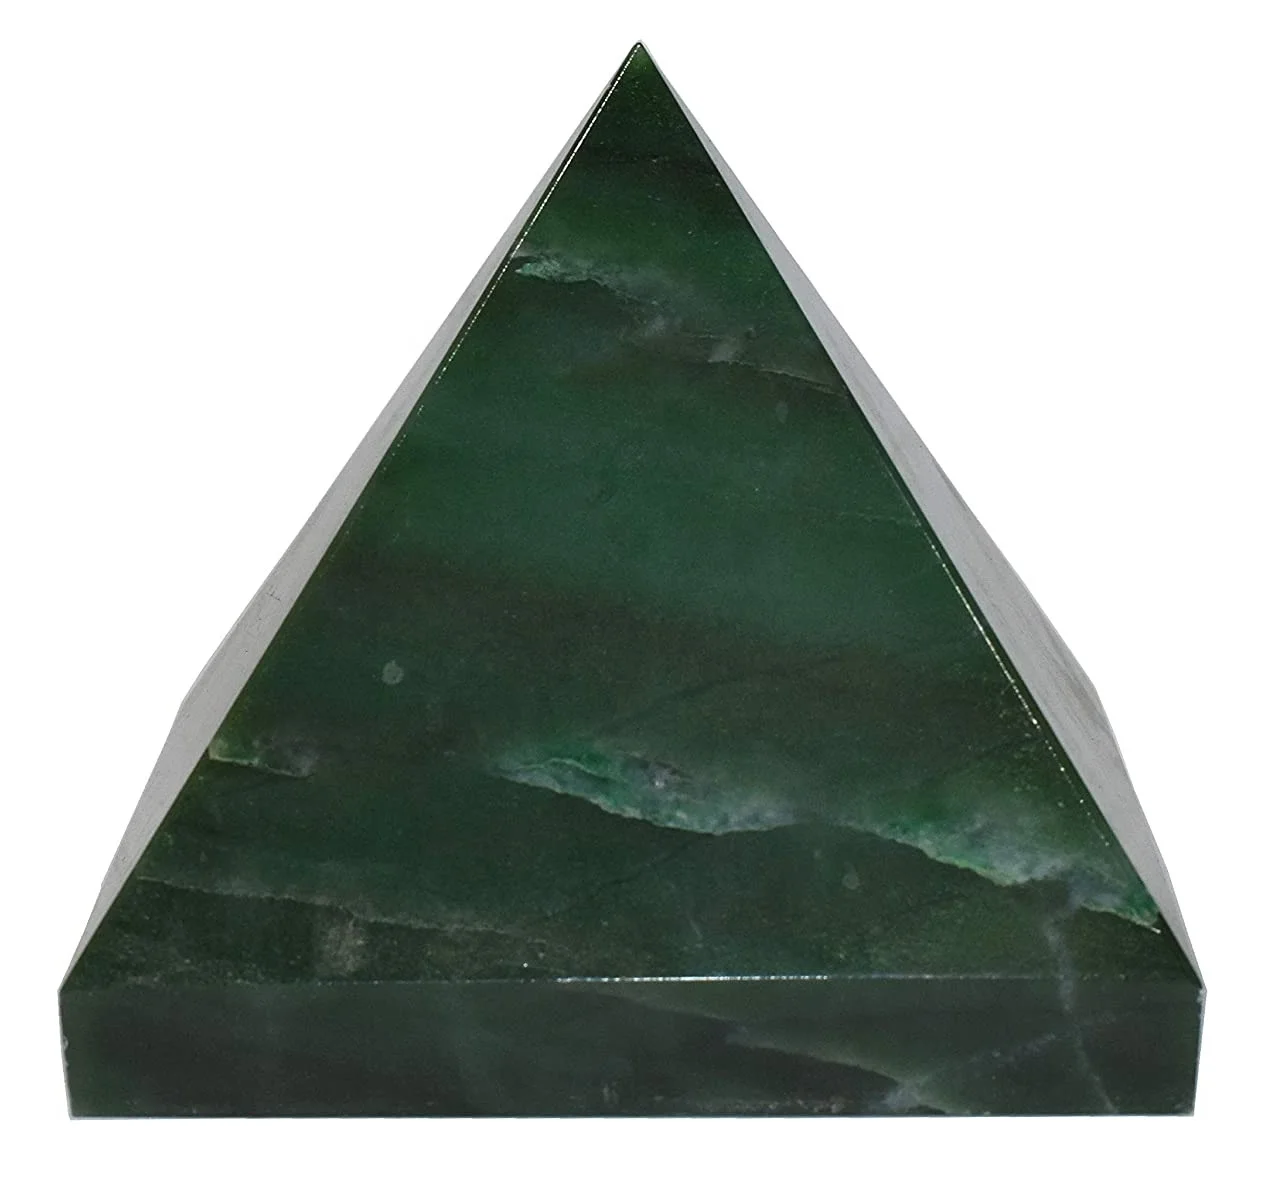 NK CRYSTALS Pirámide de Cristal de Jade Verde Piedras Naturales Reiki Curación Piedras Preciosas Feng Shui Chakra Equilibrio Meditación Generador de energía Pirámide de Vastu Regalos espirituales 